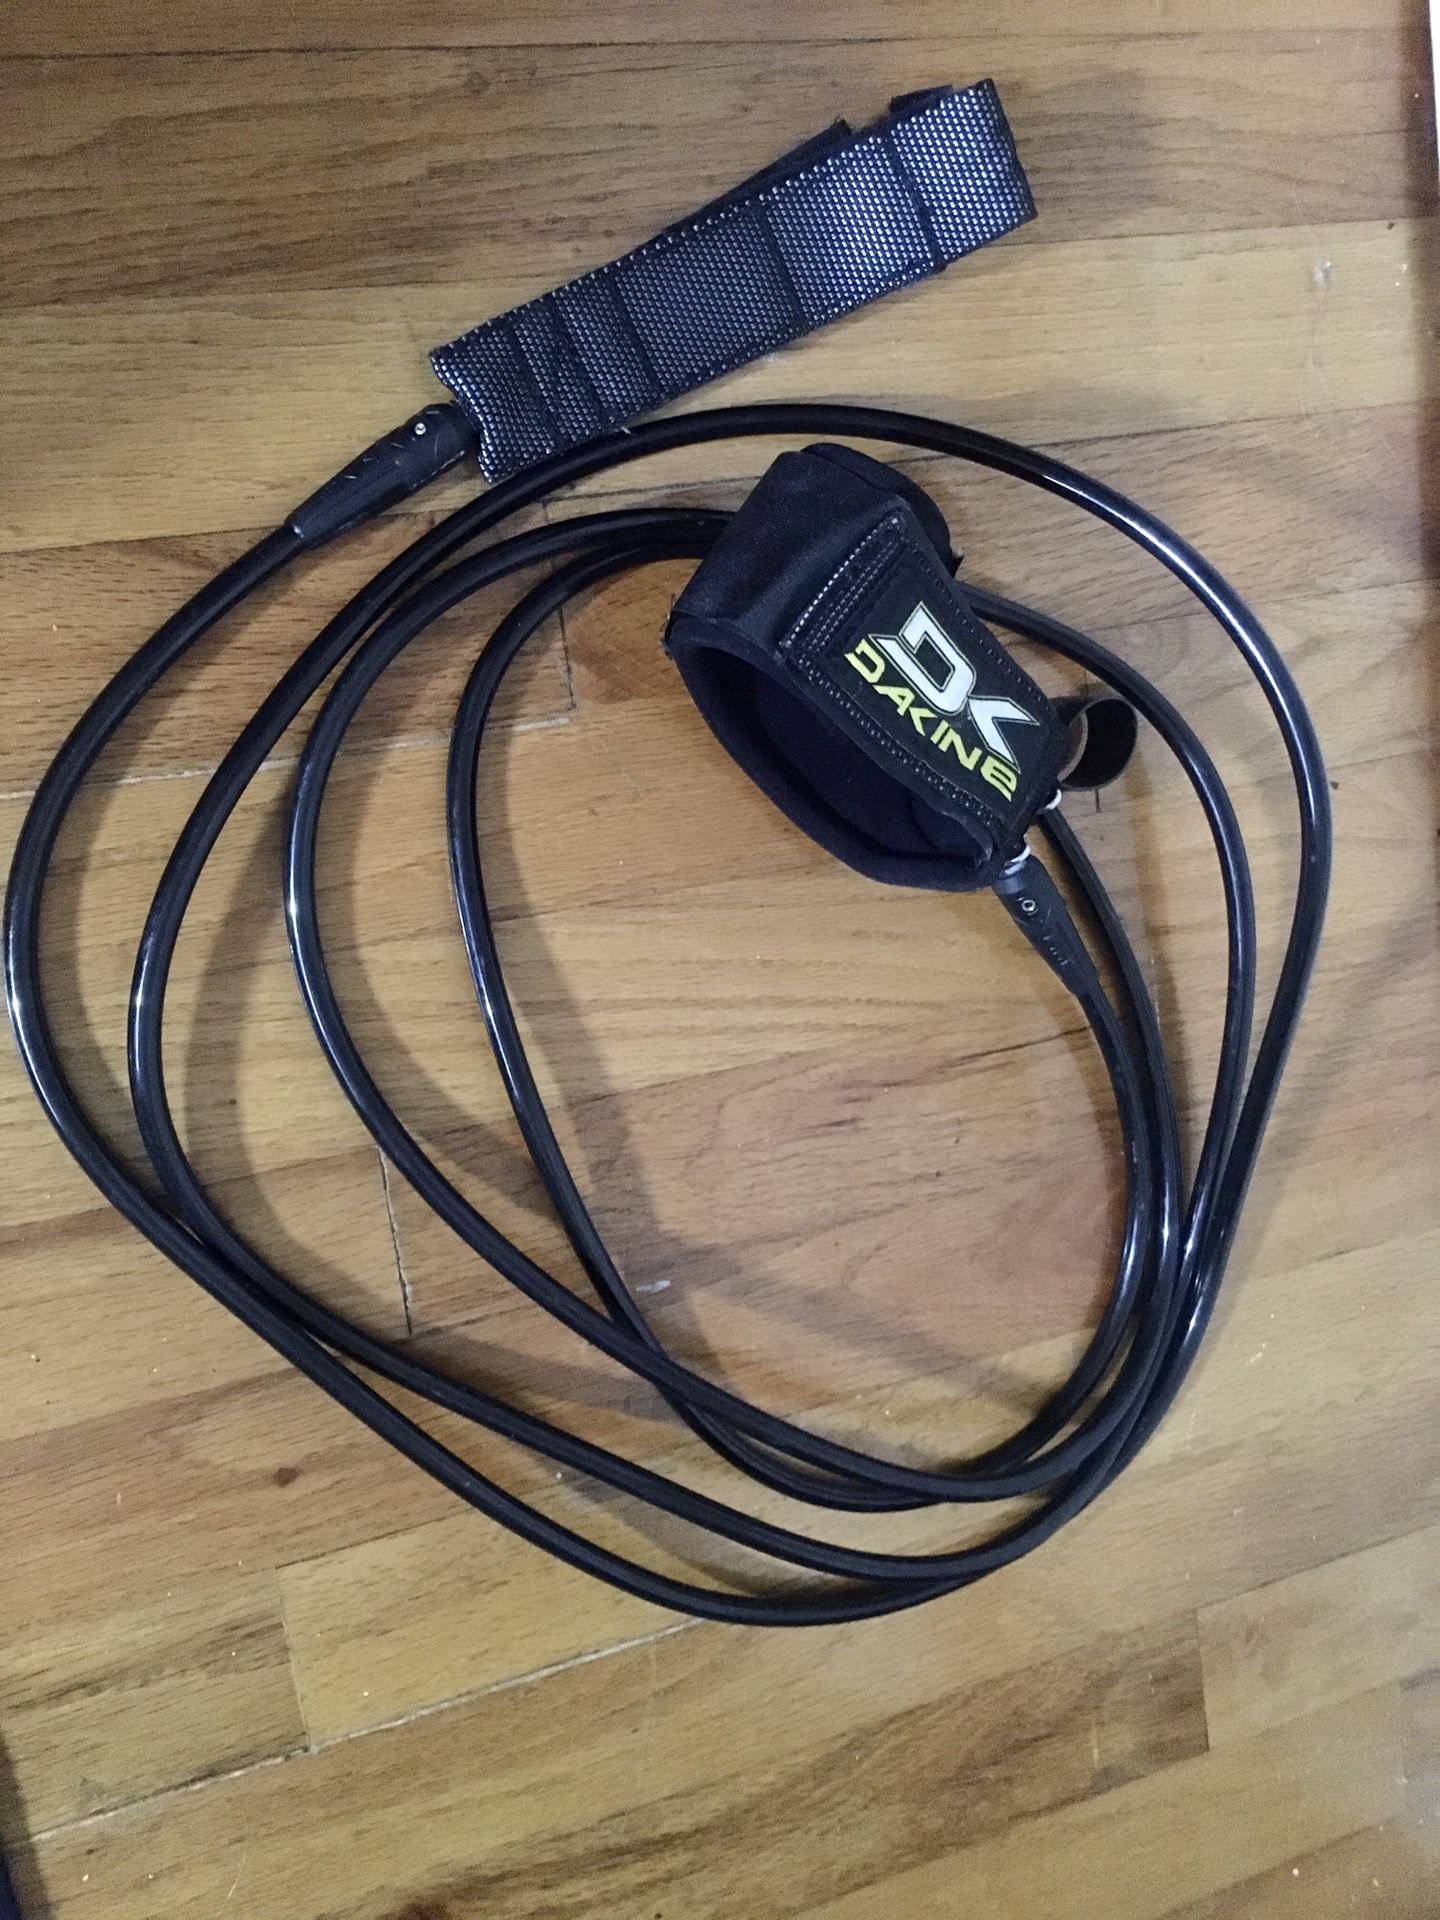 12’ Dakine longboard leash. Velcro both ends.